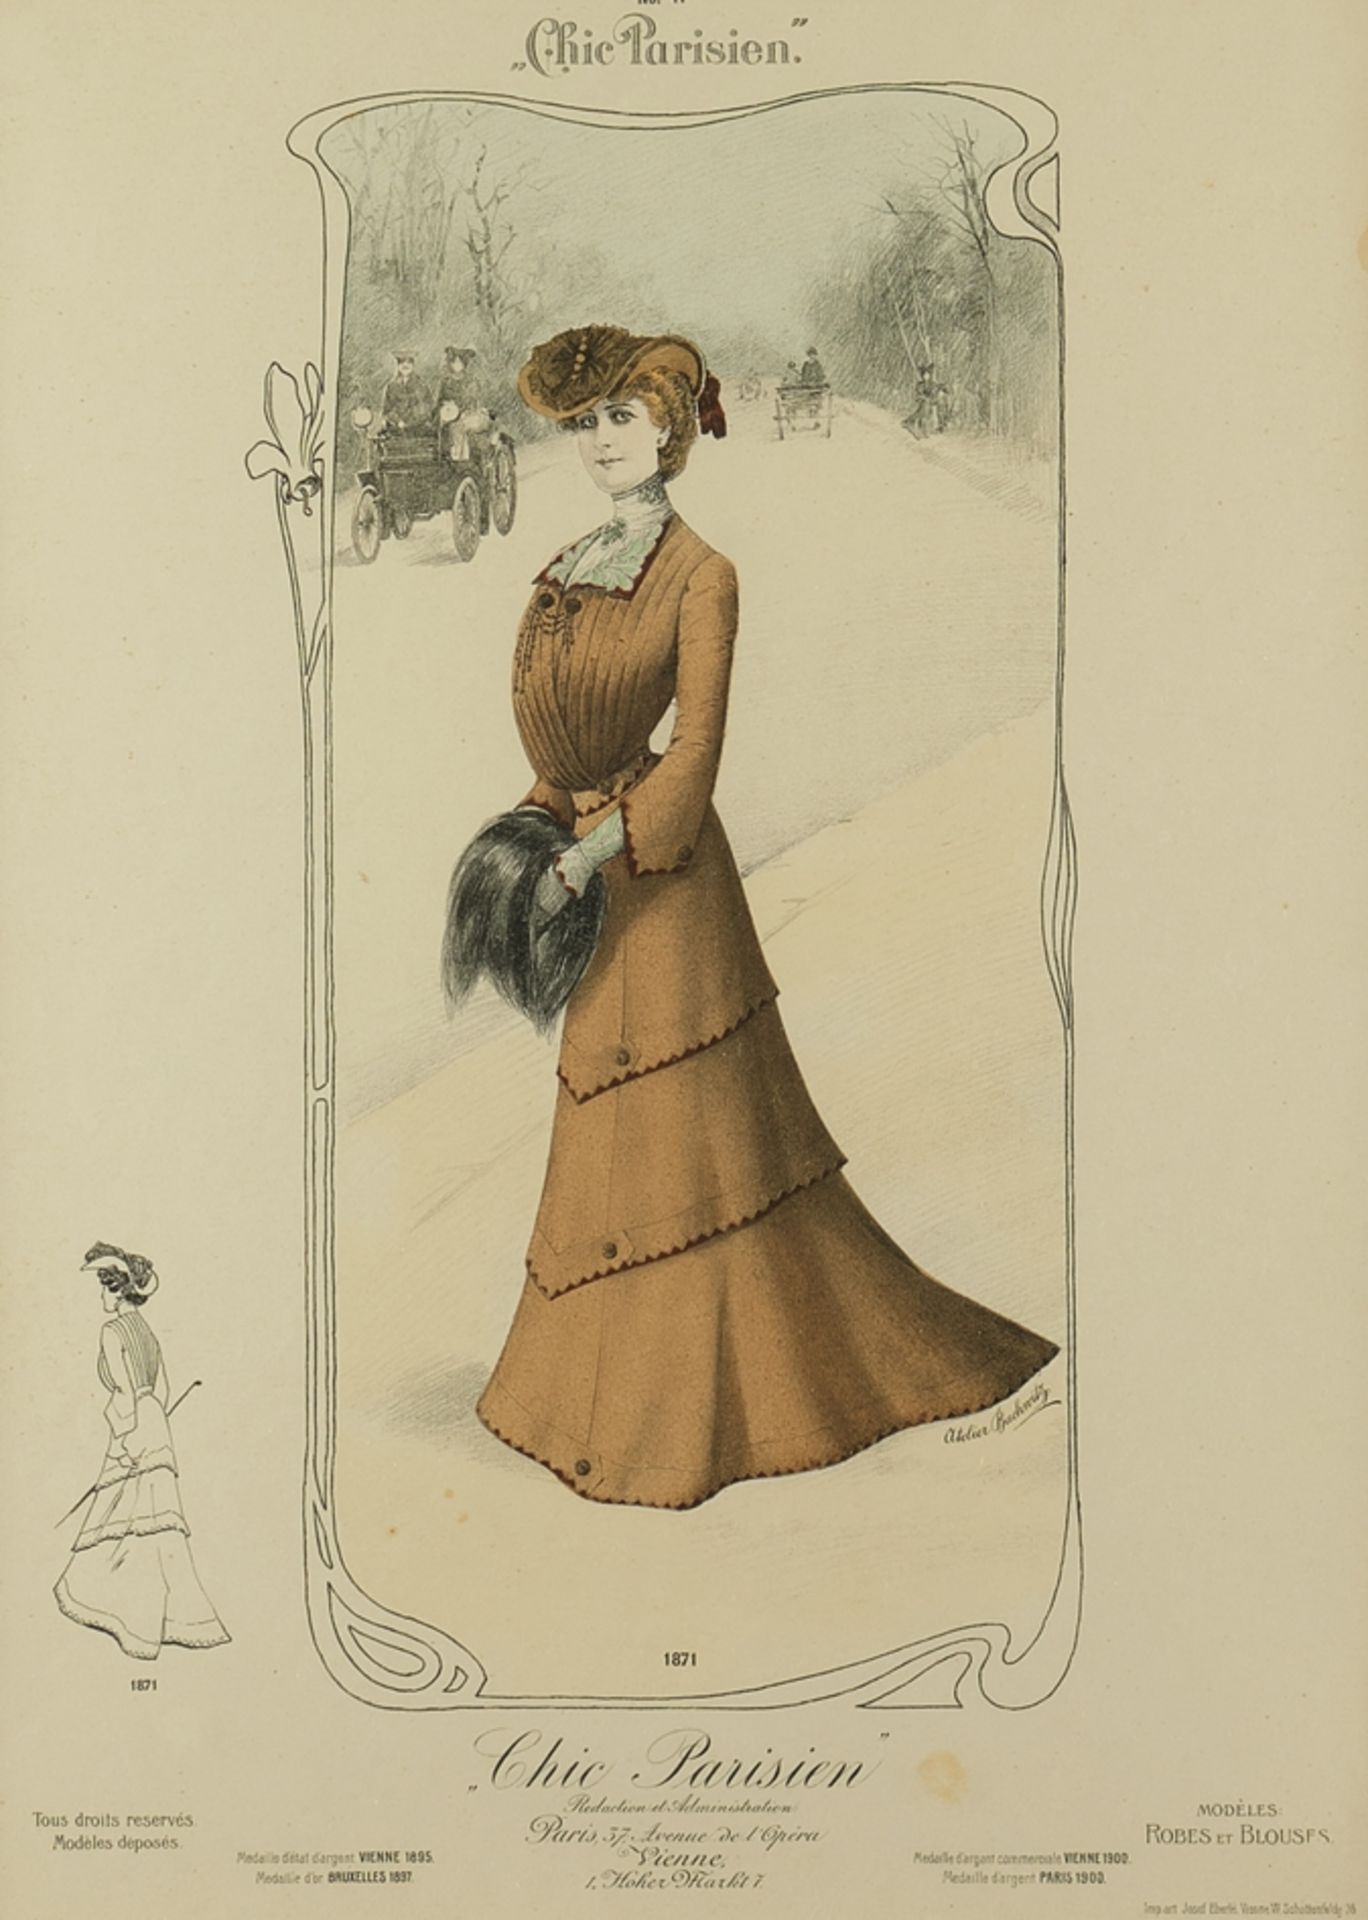 2 Modeblätter, "Chic Parisien", Paris, um 1900, Lithografien, koloriert, ca. 42 x 31 cm (P.a.), wen - Image 4 of 6